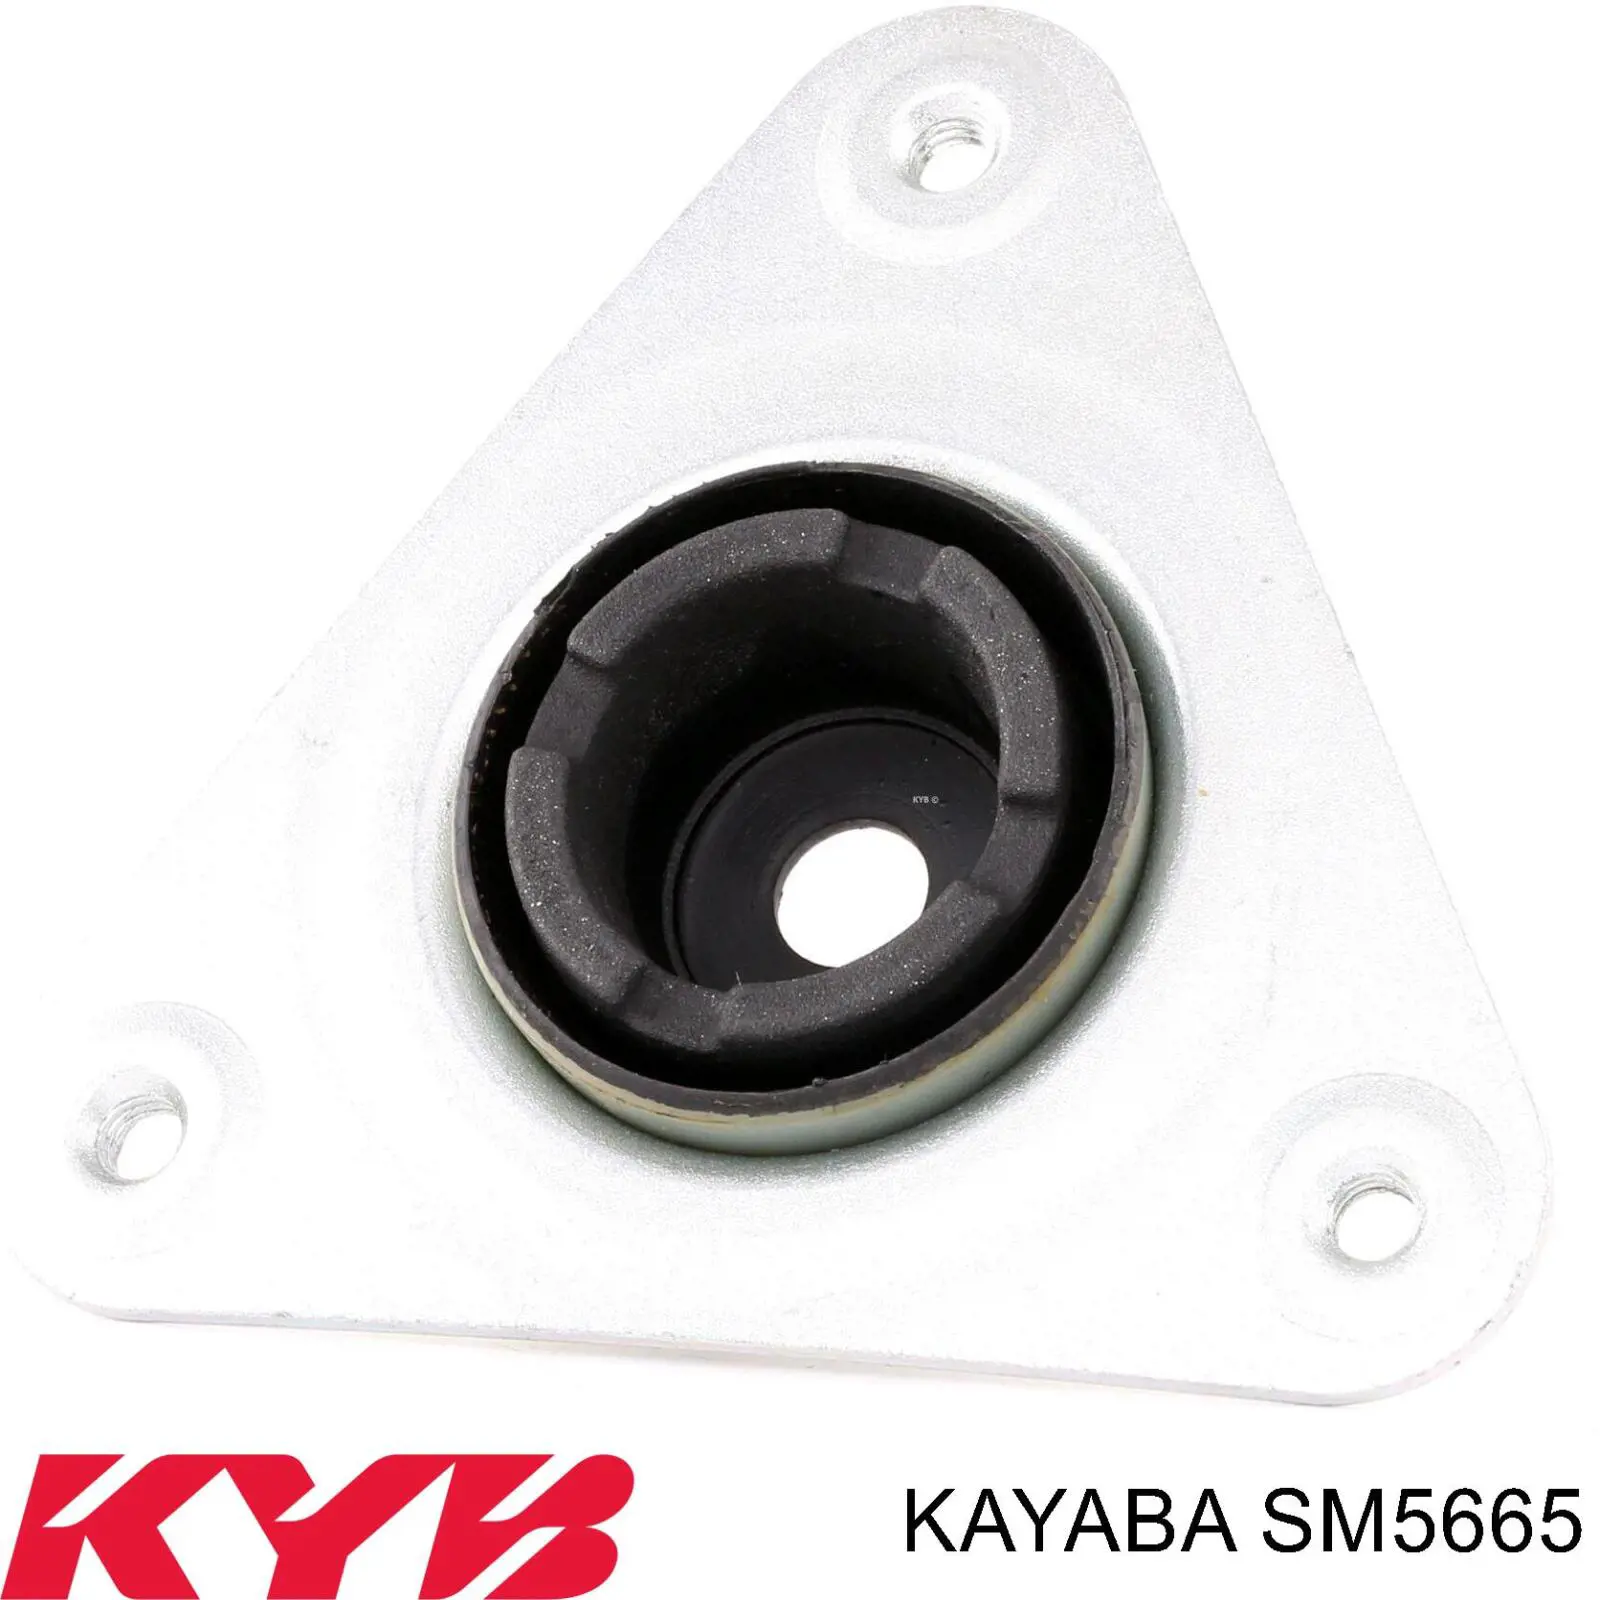 SM5665 Kayaba опора амортизатора переднего